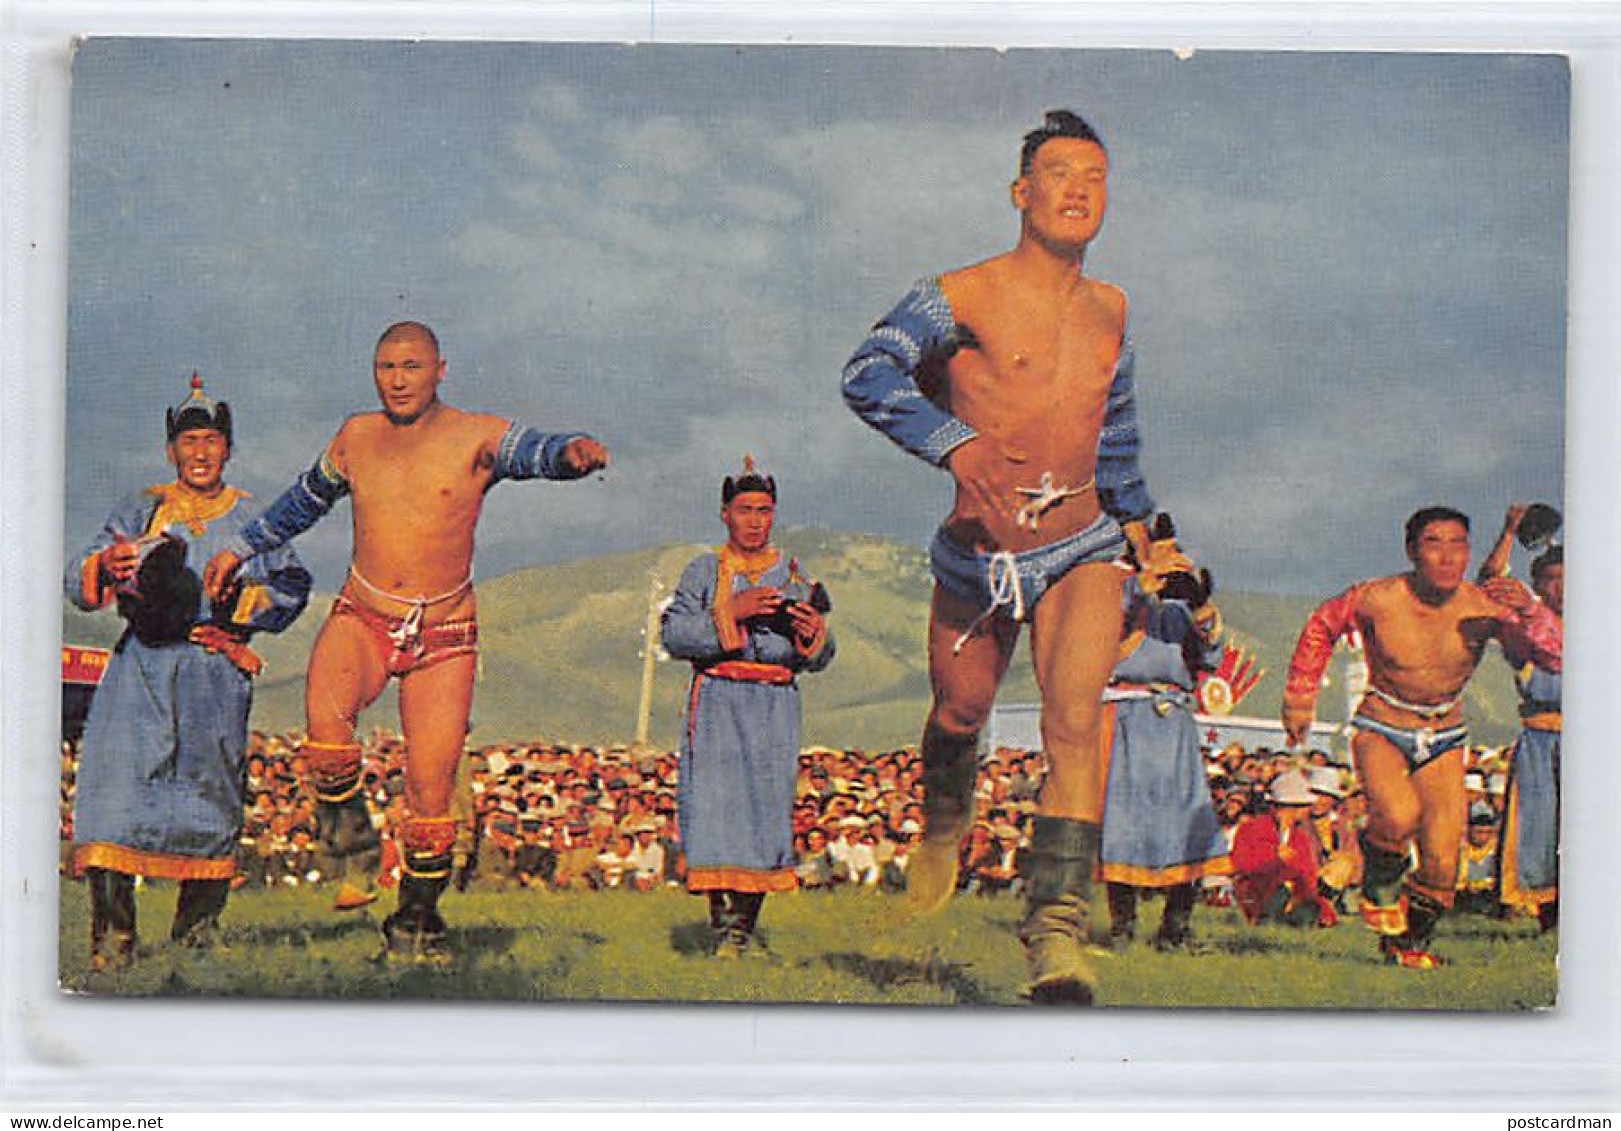 Mongolia - Mongolian Wrestlers - Mongolia